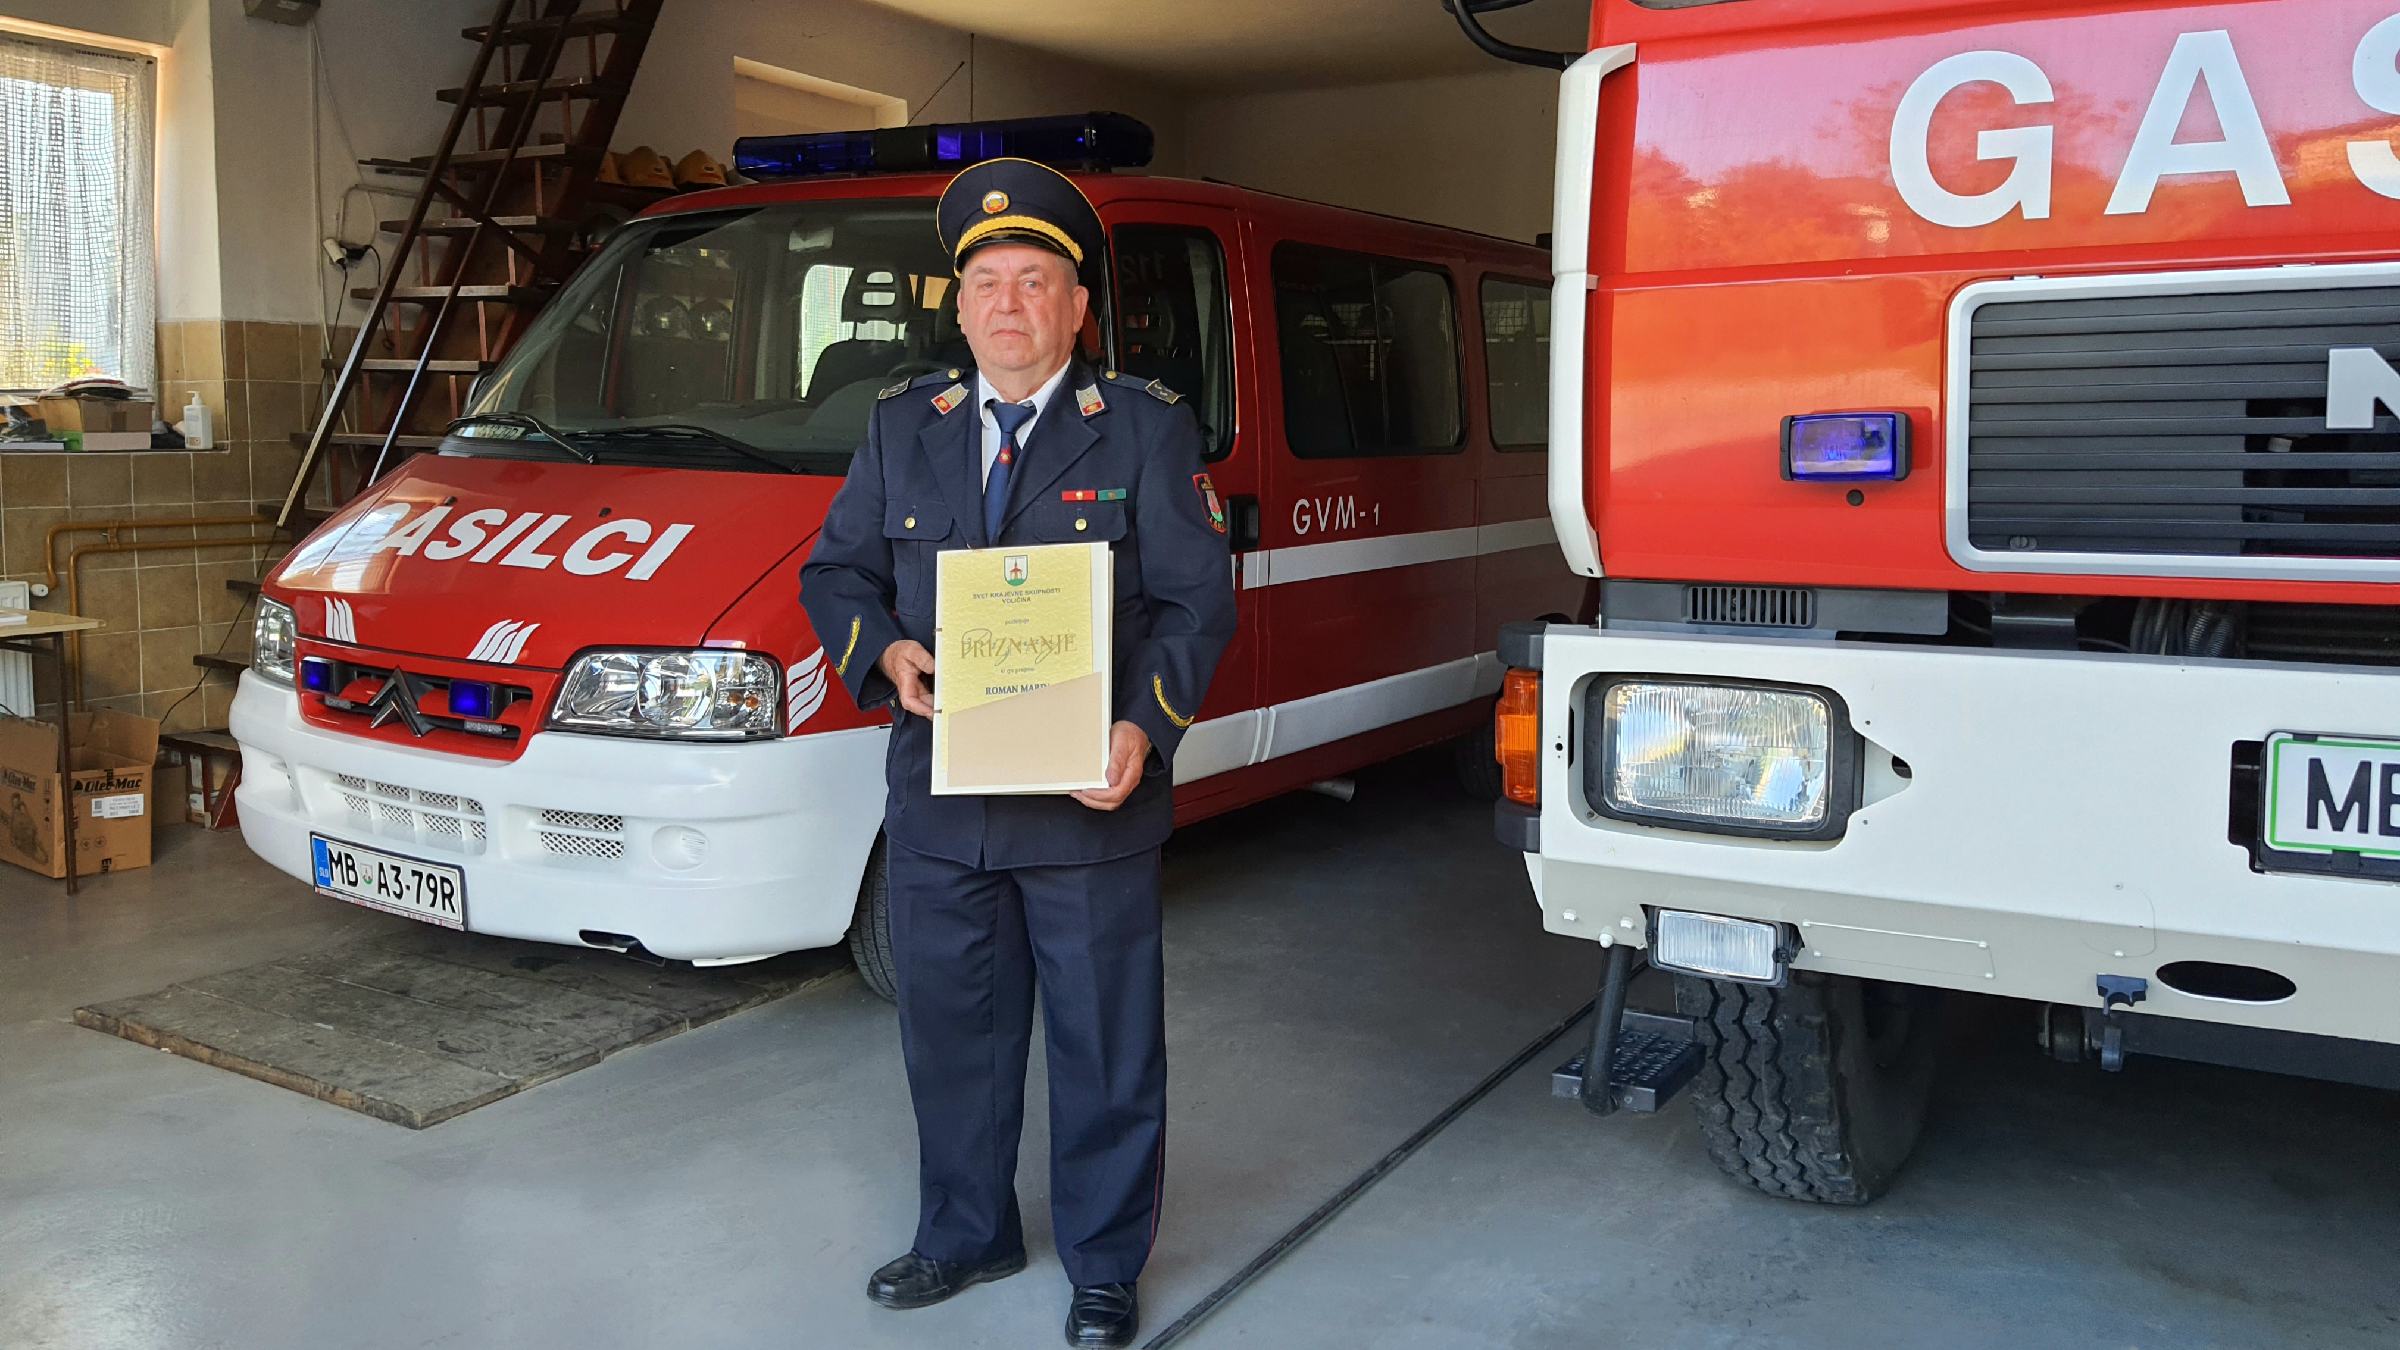 DNEVNA: Prostovoljni gasilec, ki veliko energije ter prostovoljnega dela nameni ljudem in skupnosti